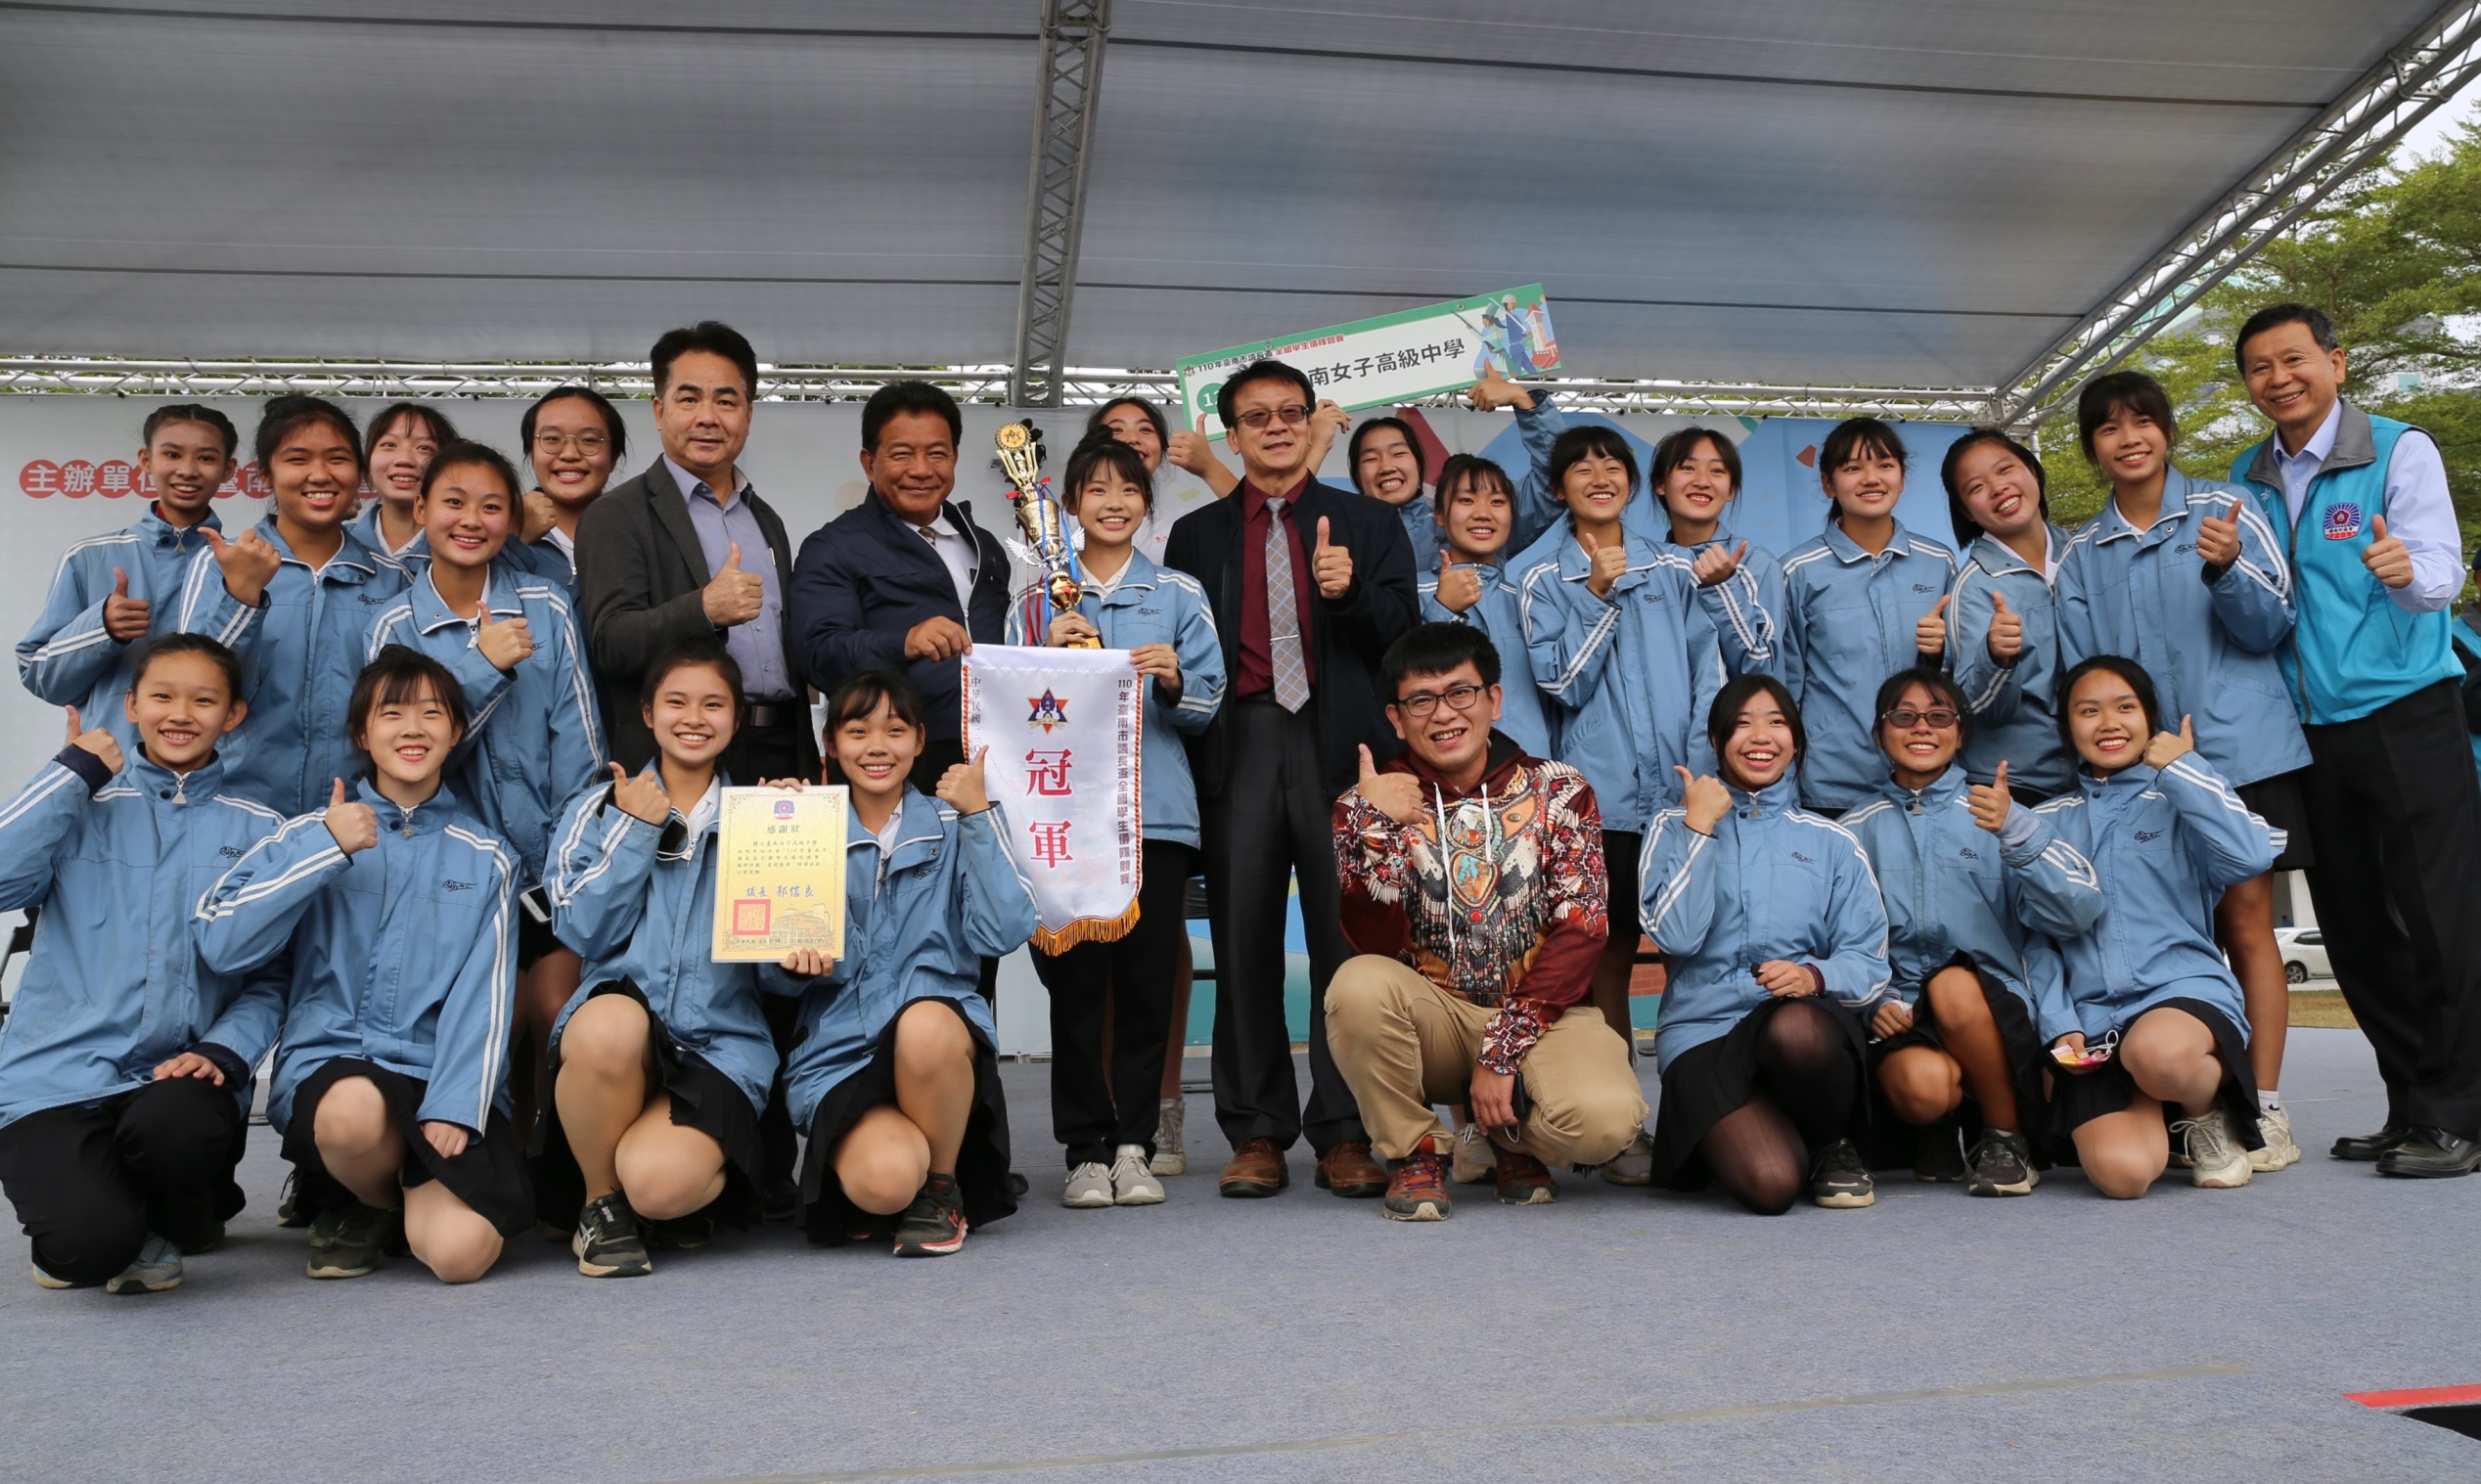 臺南女中贏得臺南市議長盃全國學生儀隊競賽第一名